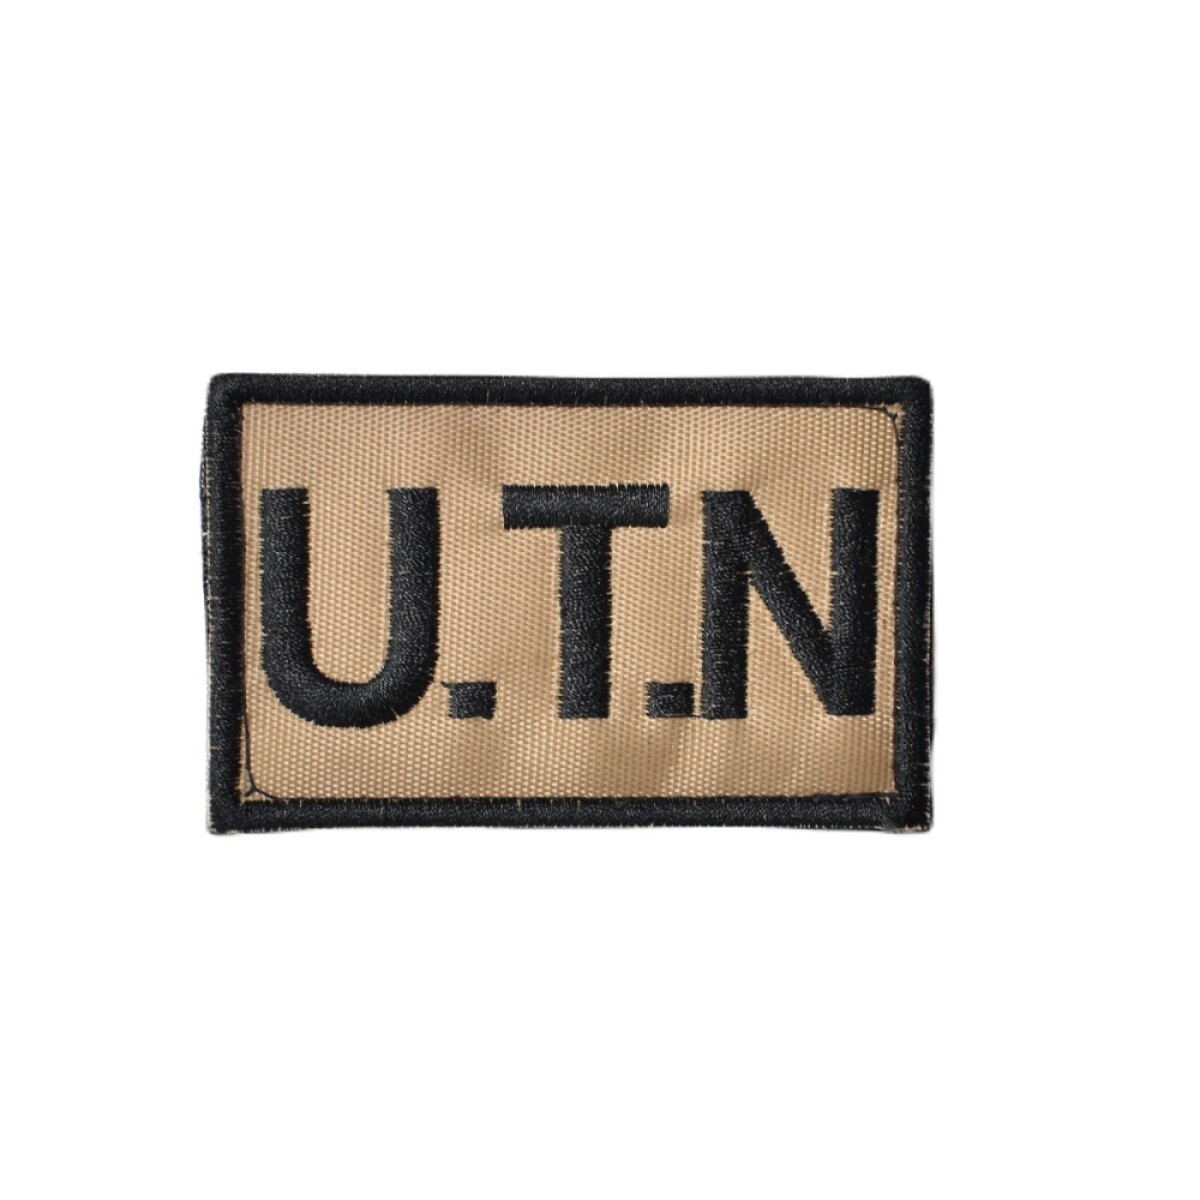 Parche rectangular bordado U.T.N Unidad Táctica Negociadora - Caqui 